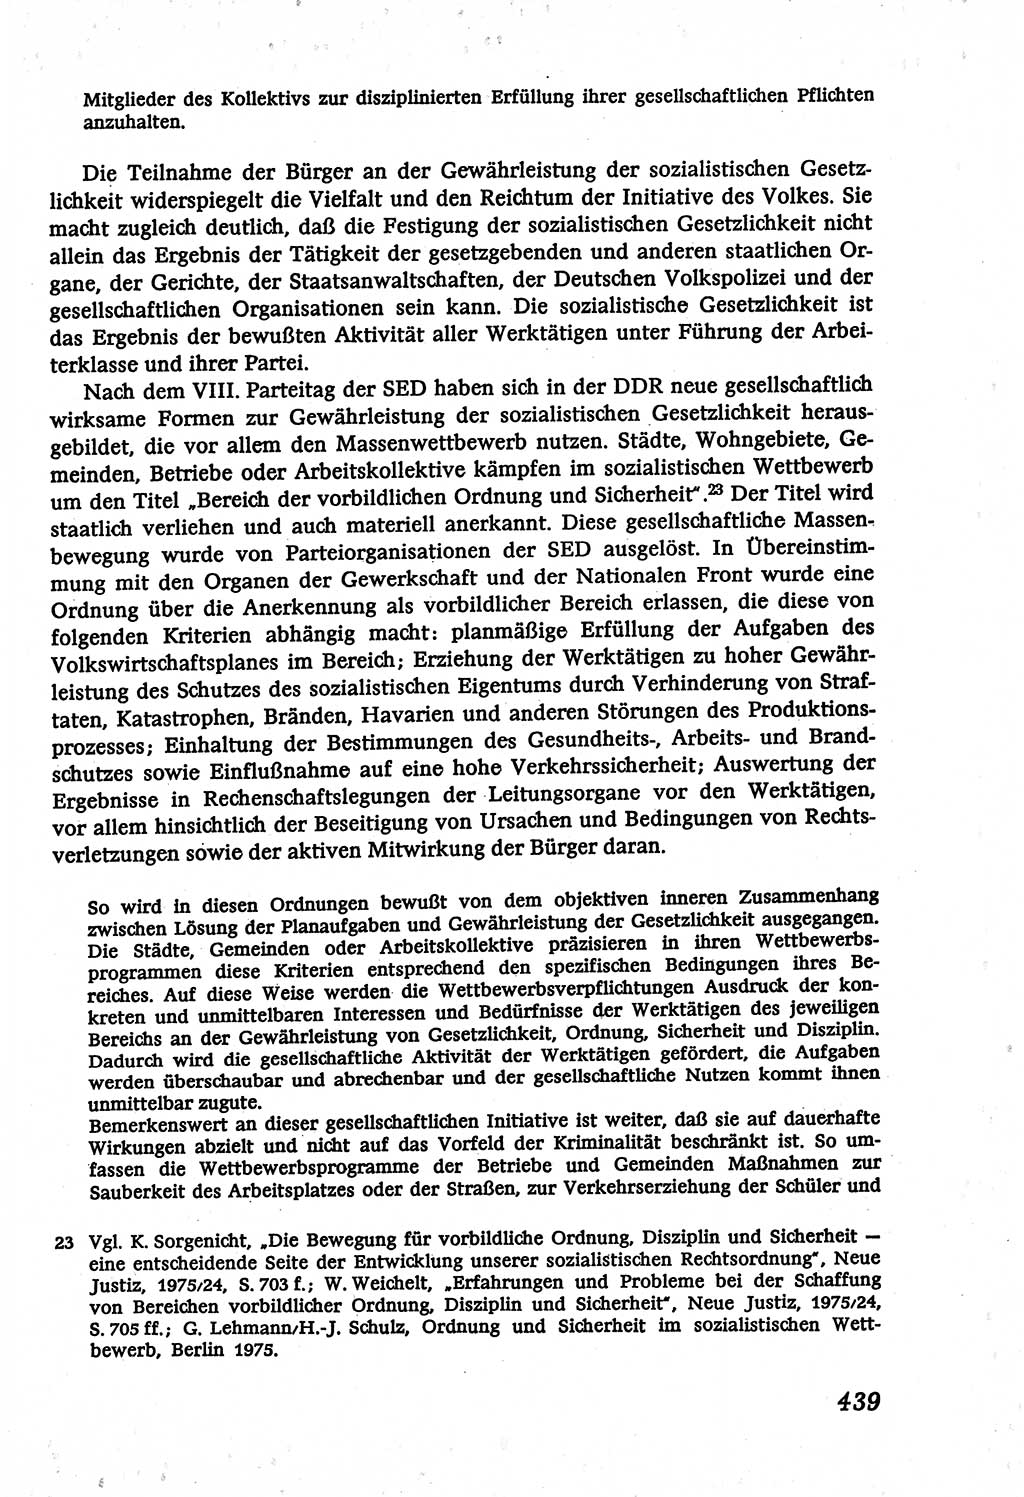 Marxistisch-leninistische (ML) Staats- und Rechtstheorie [Deutsche Demokratische Republik (DDR)], Lehrbuch 1980, Seite 439 (ML St.-R.-Th. DDR Lb. 1980, S. 439)